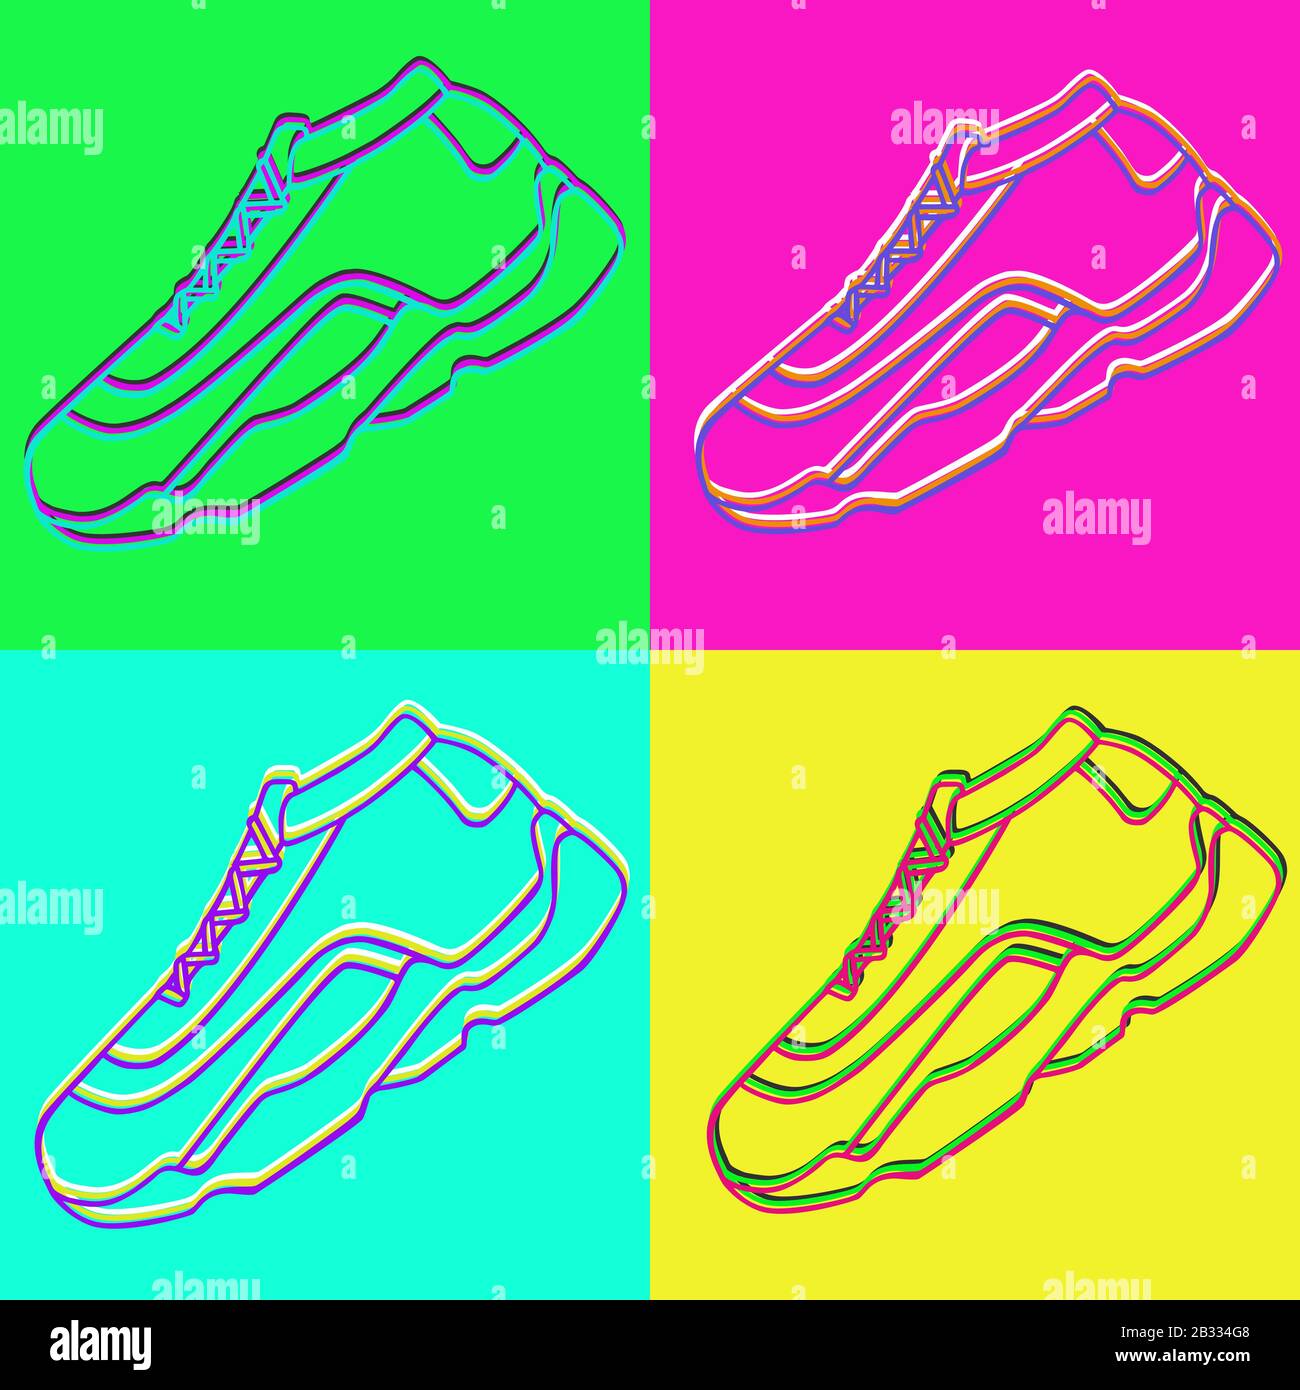 Vektorsymbol für Sneakers. Helle Neon Linearschuhe auf pinkfarbenem grün-blauem und gelbem Hintergrund.Einfache Abbildung von Fitness und Sport, Sportschuh. Stock Vektor